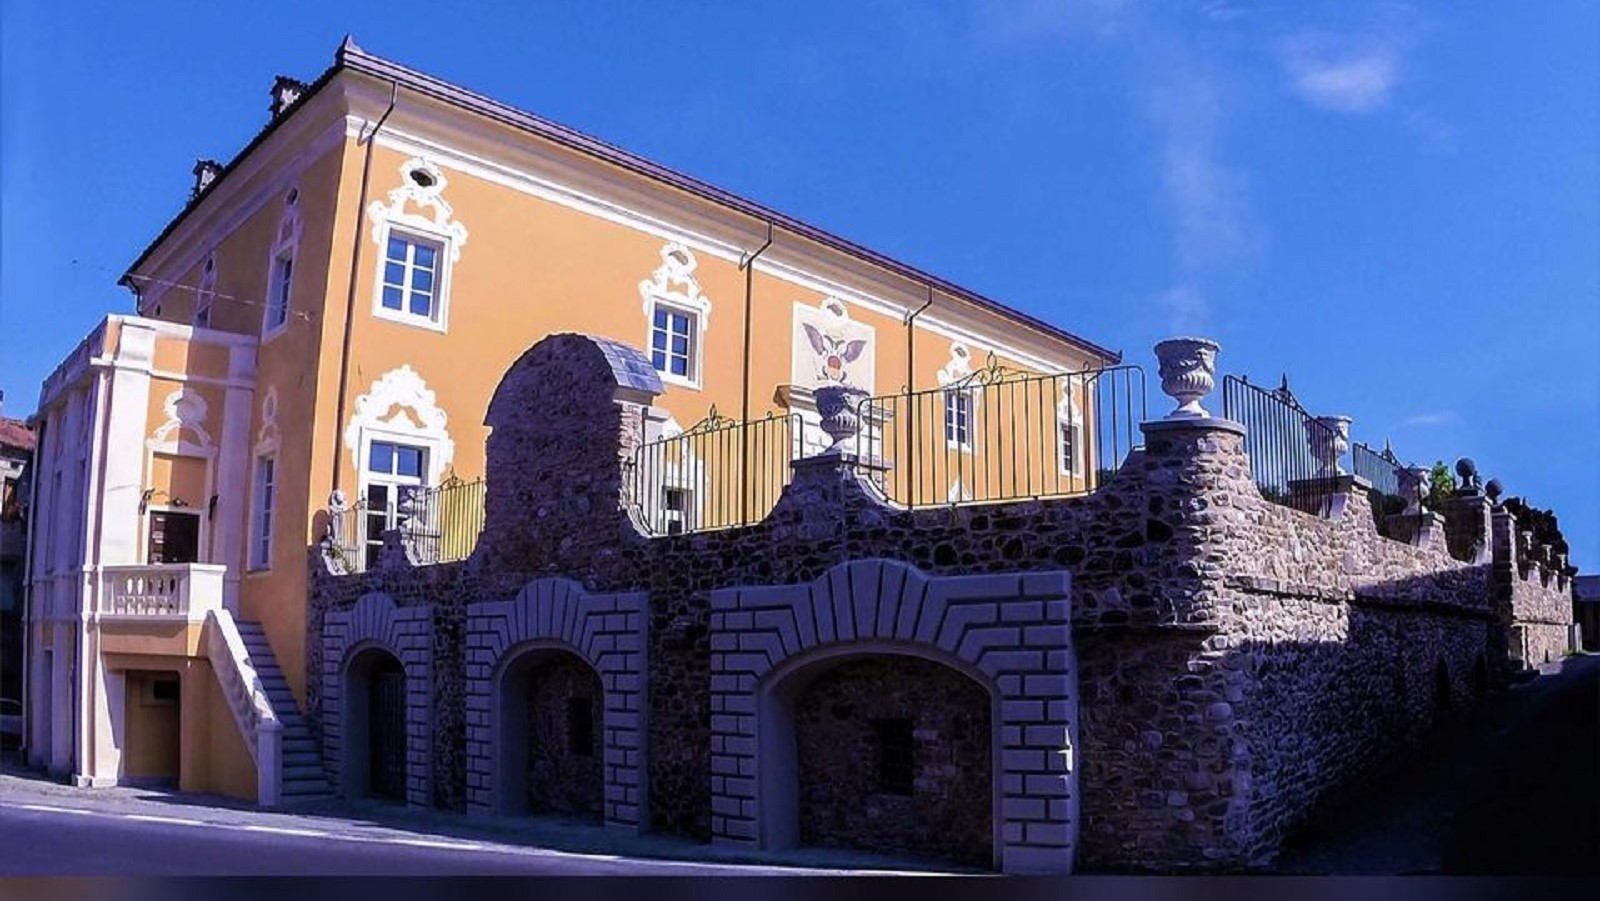 Vista del Castillo de Pallerone